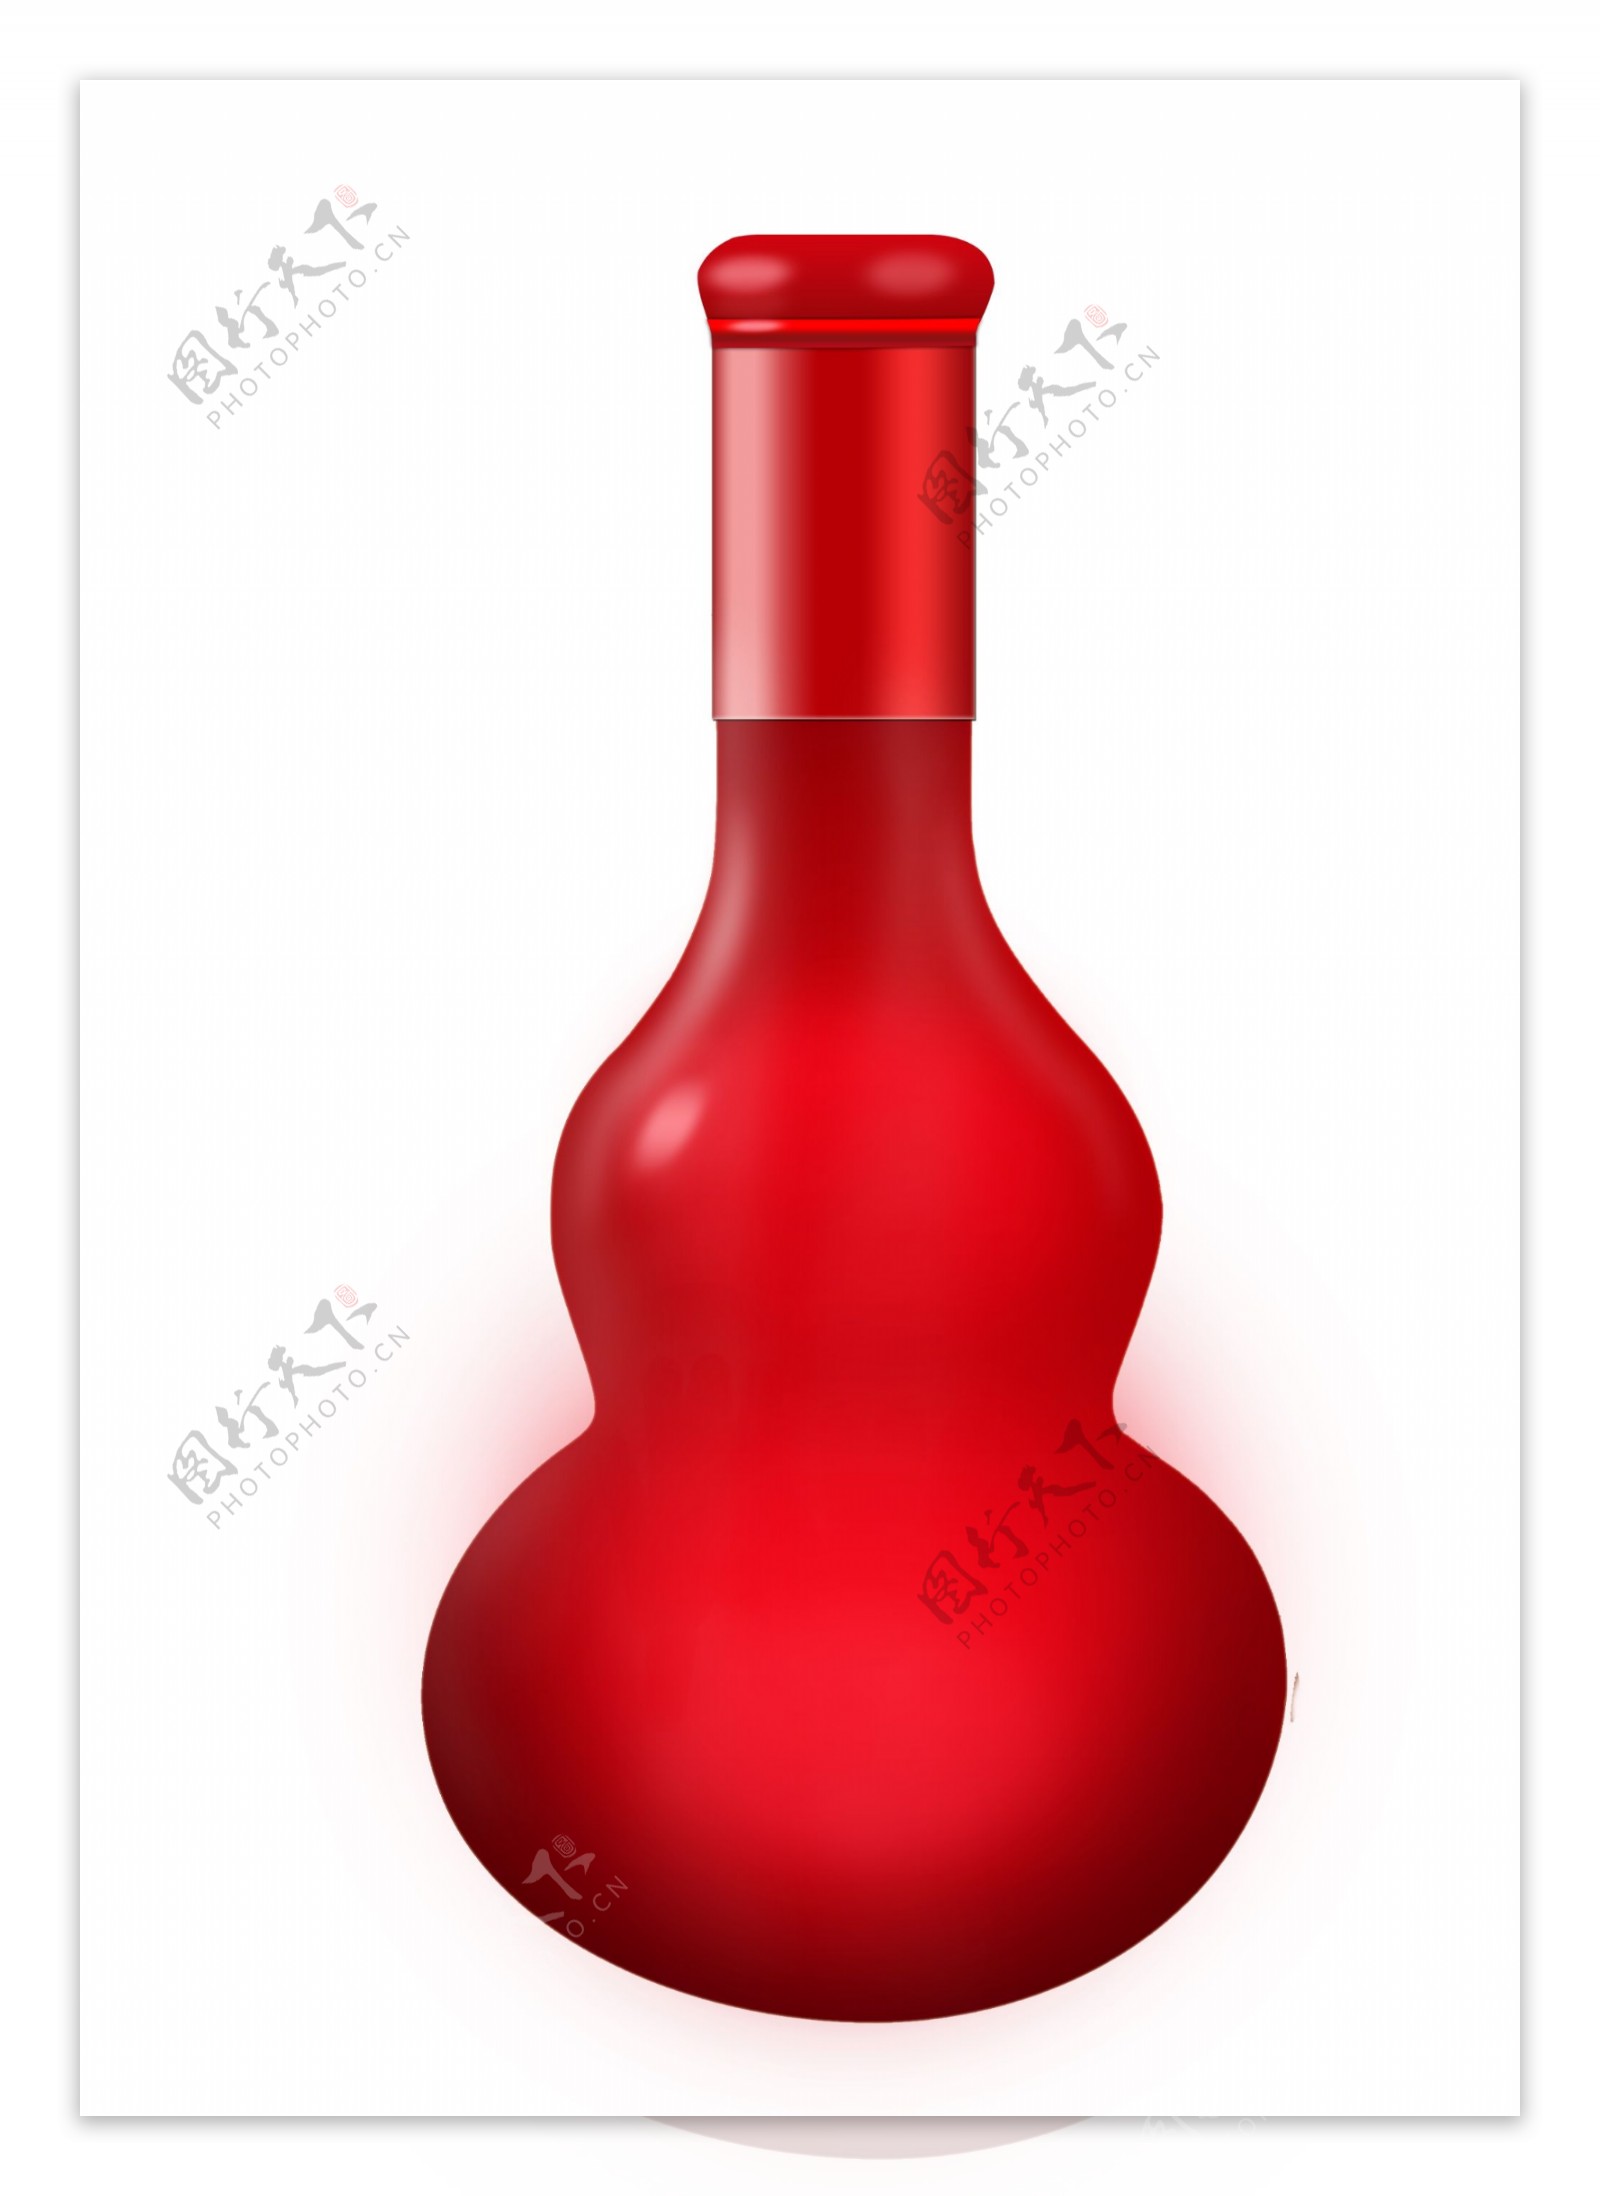 红色葫芦酒瓶图片